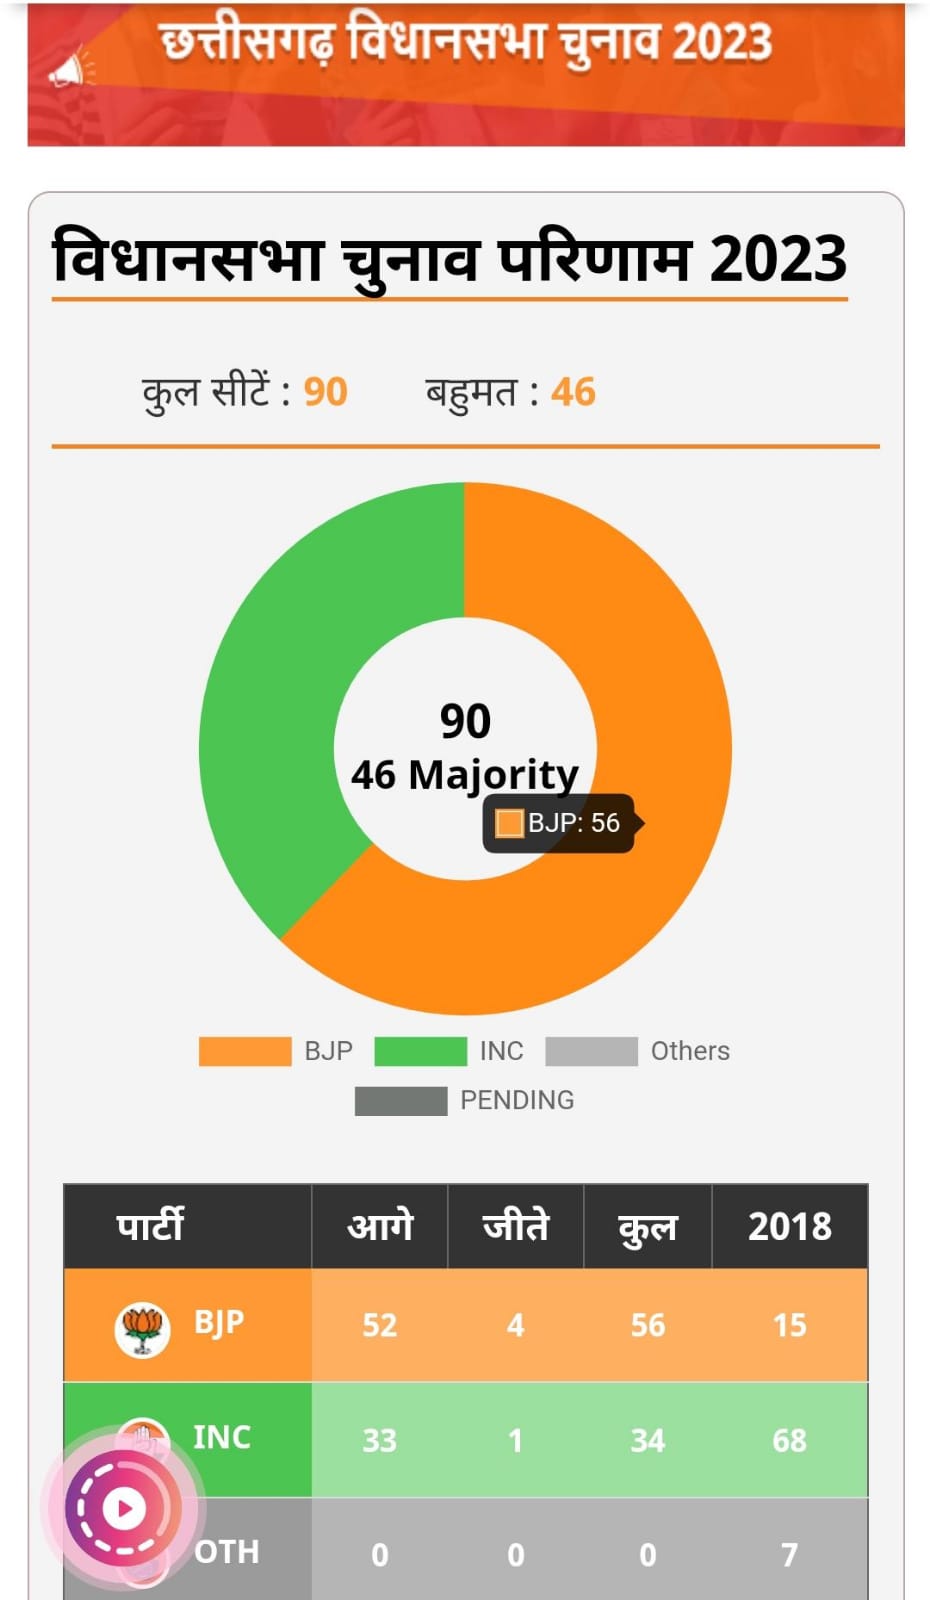 Chhattisgarh Election Results 2023: छत्तीसगढ़ में कांग्रेस की हार, बनेगी भाजपा सरकार, भूपेश बघेल का इस्तीफा